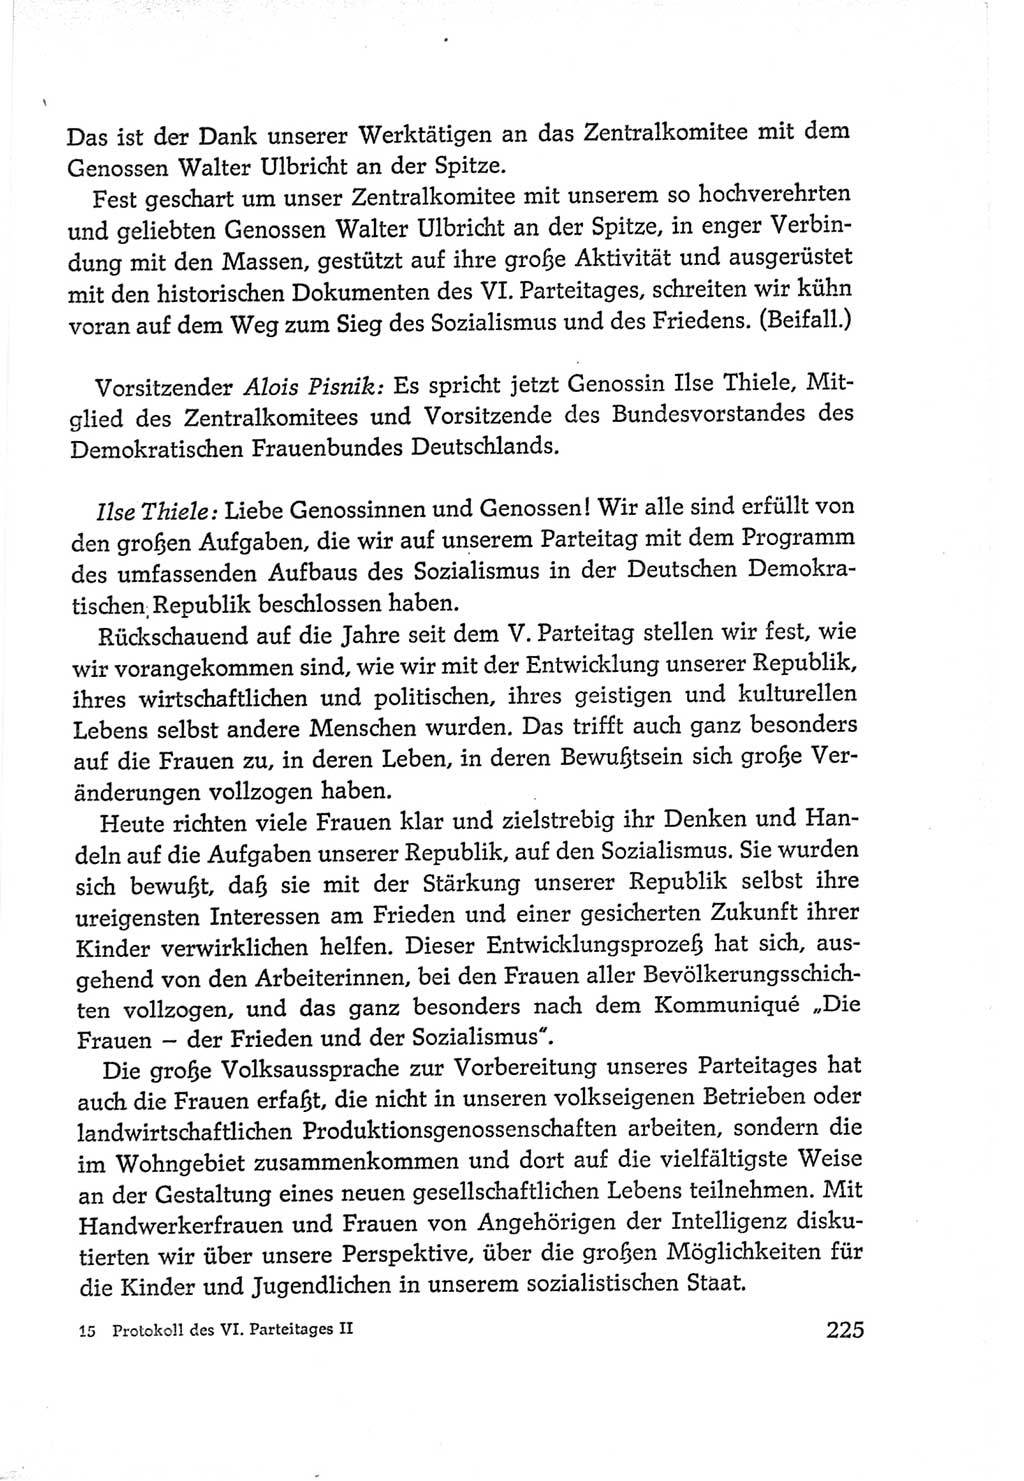 Protokoll der Verhandlungen des Ⅵ. Parteitages der Sozialistischen Einheitspartei Deutschlands (SED) [Deutsche Demokratische Republik (DDR)] 1963, Band Ⅱ, Seite 225 (Prot. Verh. Ⅵ. PT SED DDR 1963, Bd. Ⅱ, S. 225)